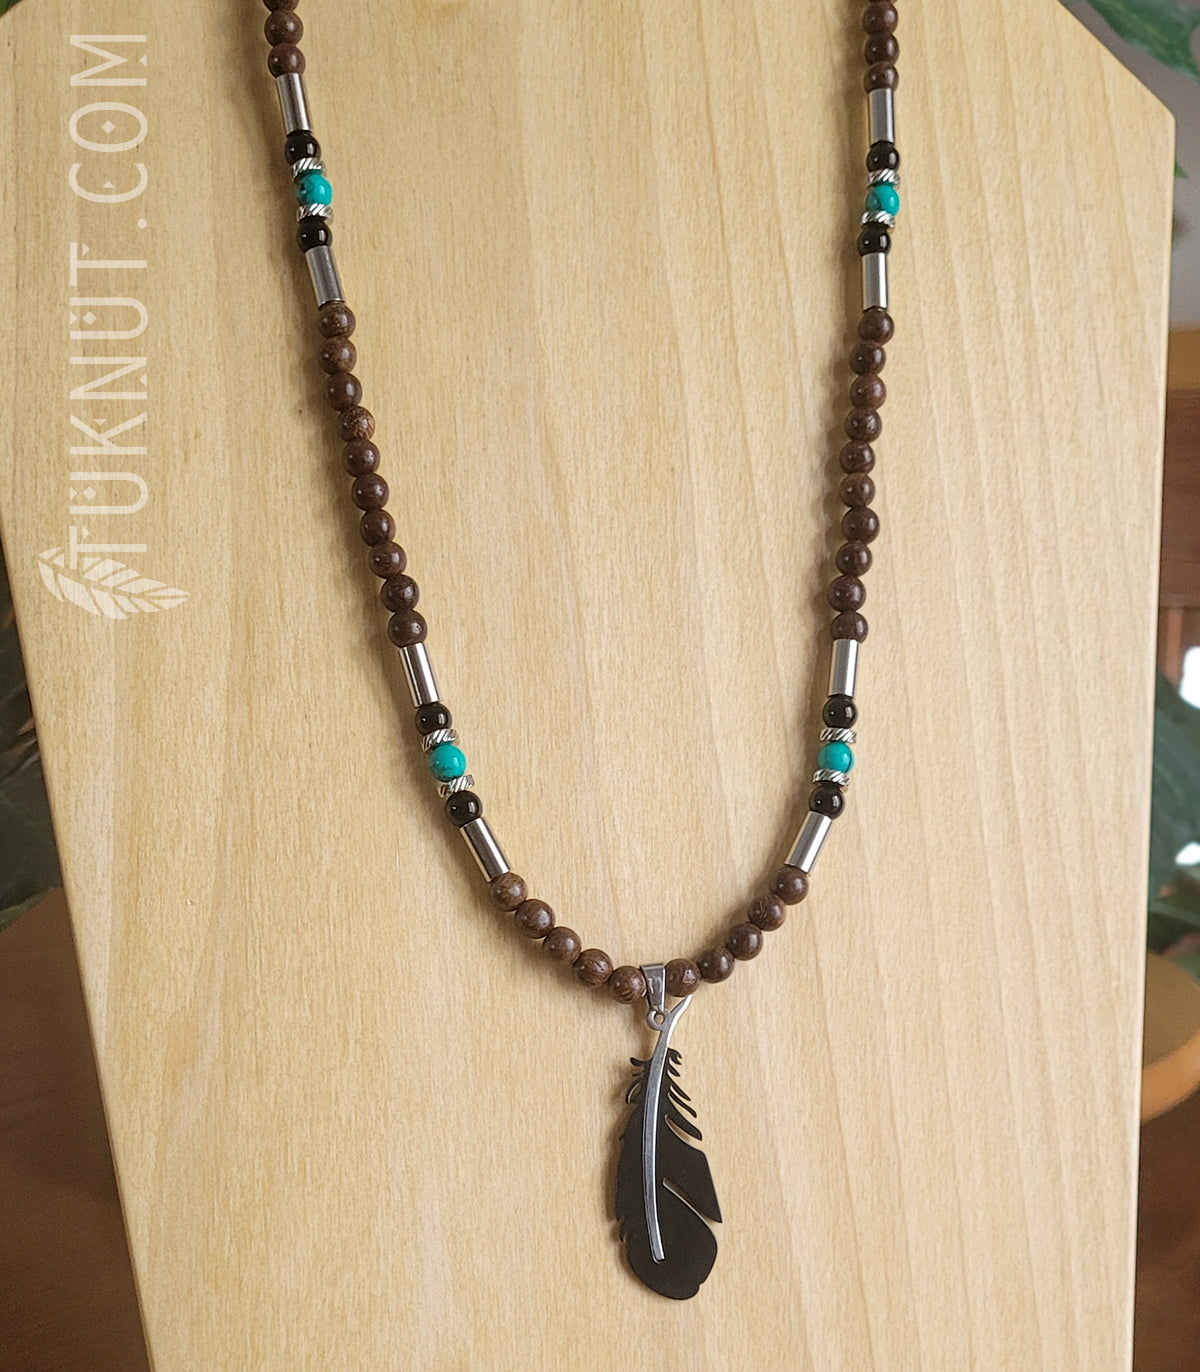 Collier d'inspiration autochtone avec pendentif (plume noire et argent) en acier inoxydable avec bois, onyx et turquoise (couleurs : brun, noir, turquoise et argent) TUKNUT